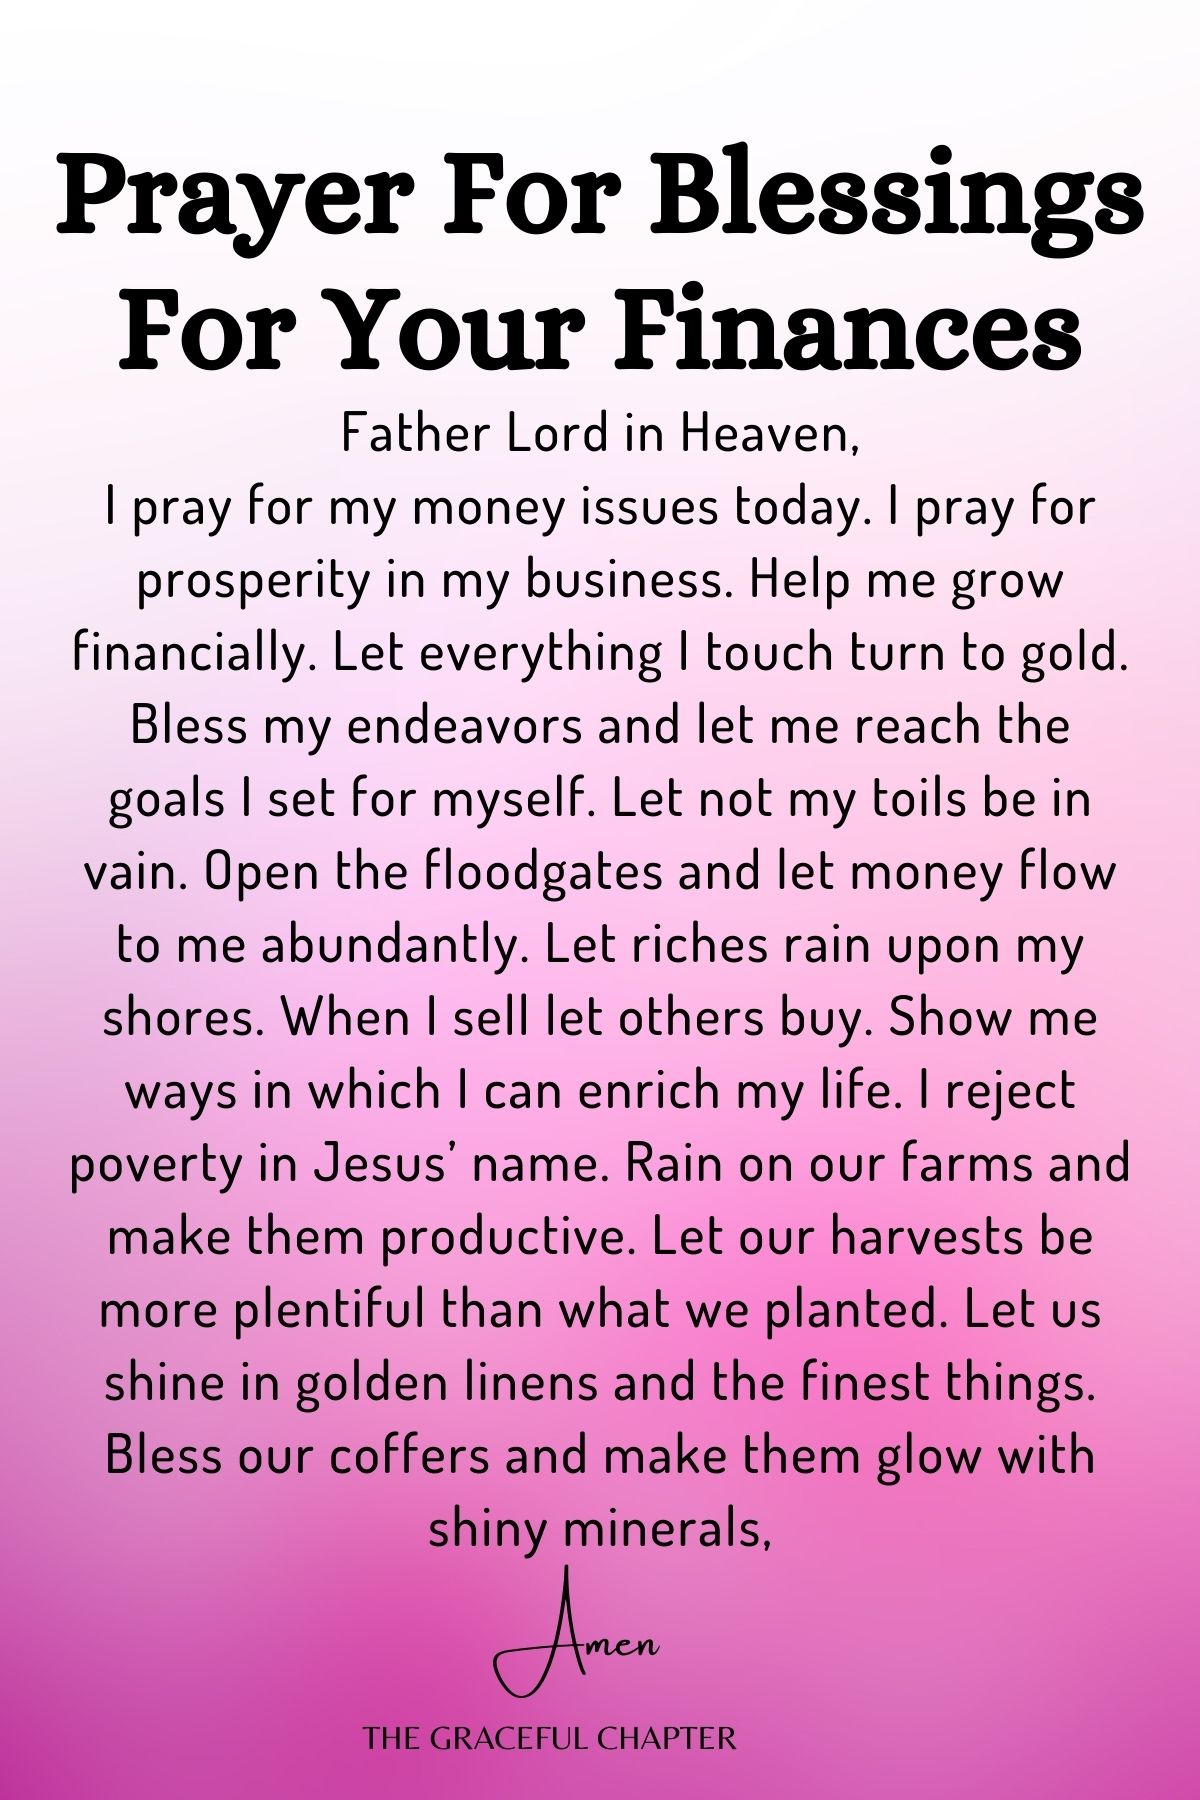 Prayer for blessings for your finances